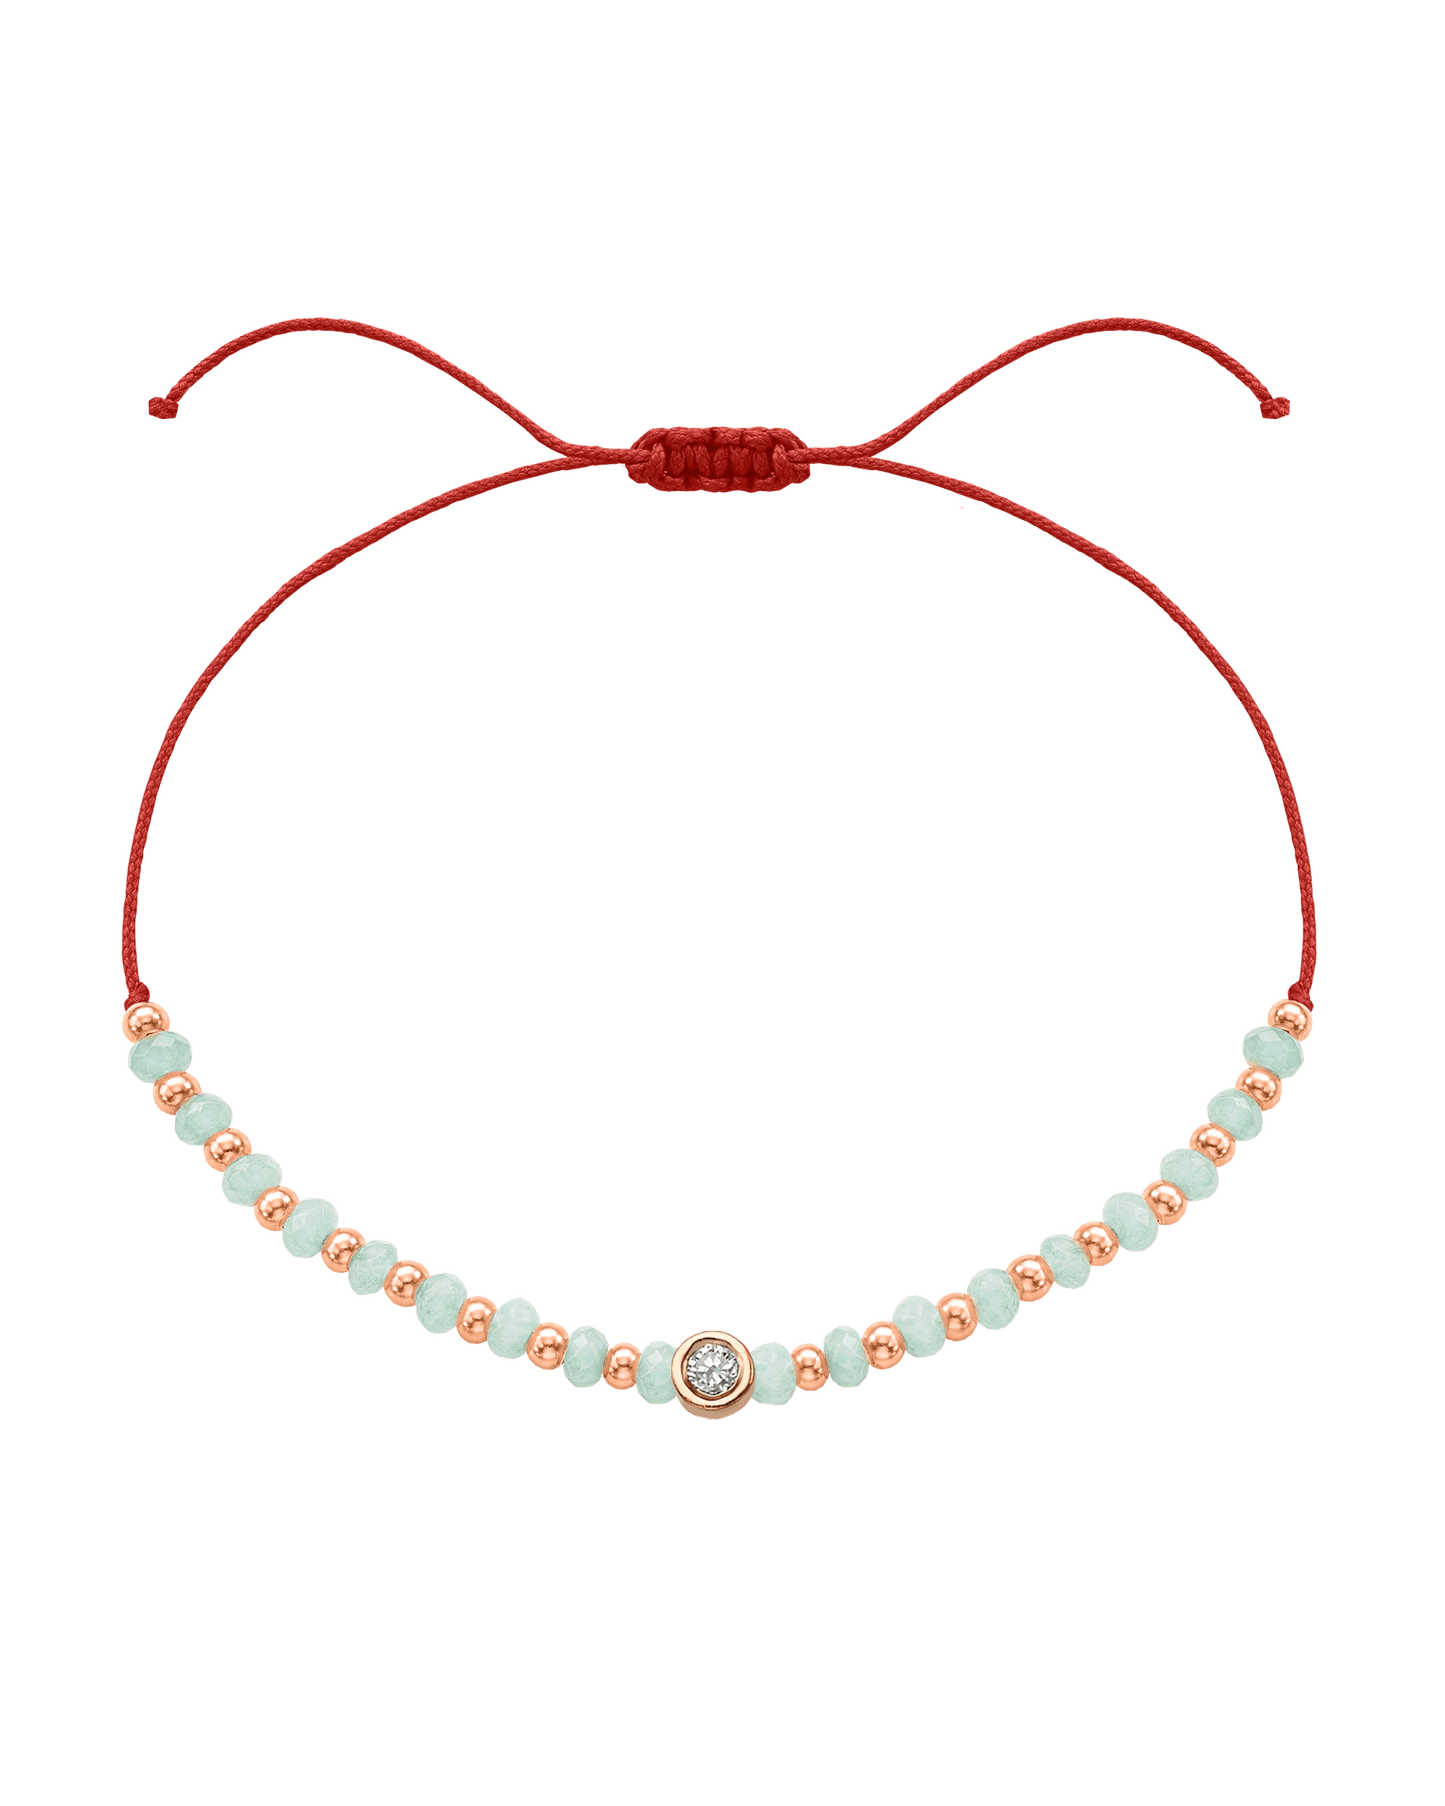 Apatite Gemstone String of Love Bracelet for Inspiration - 14K Rose Gold Bracelets 14K Solid Gold Red Medium: 0.04ct 